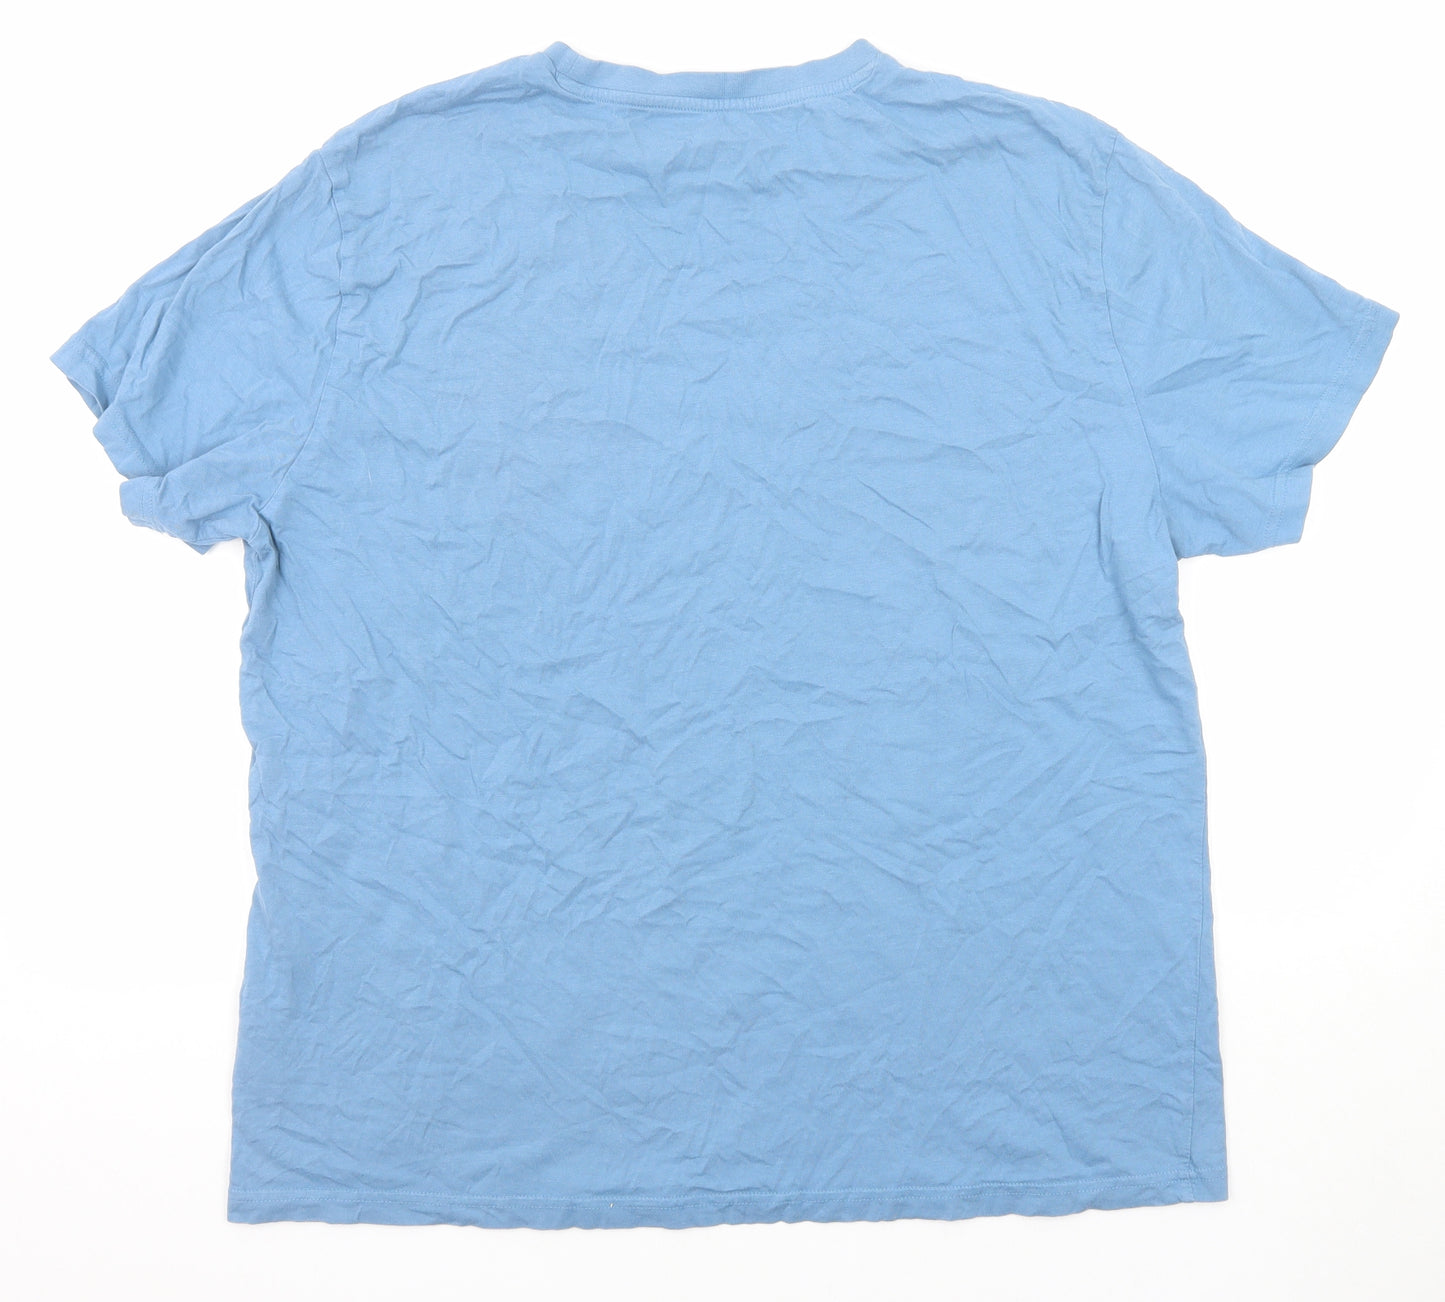 H&M Mens Blue Cotton T-Shirt Size XL Round Neck